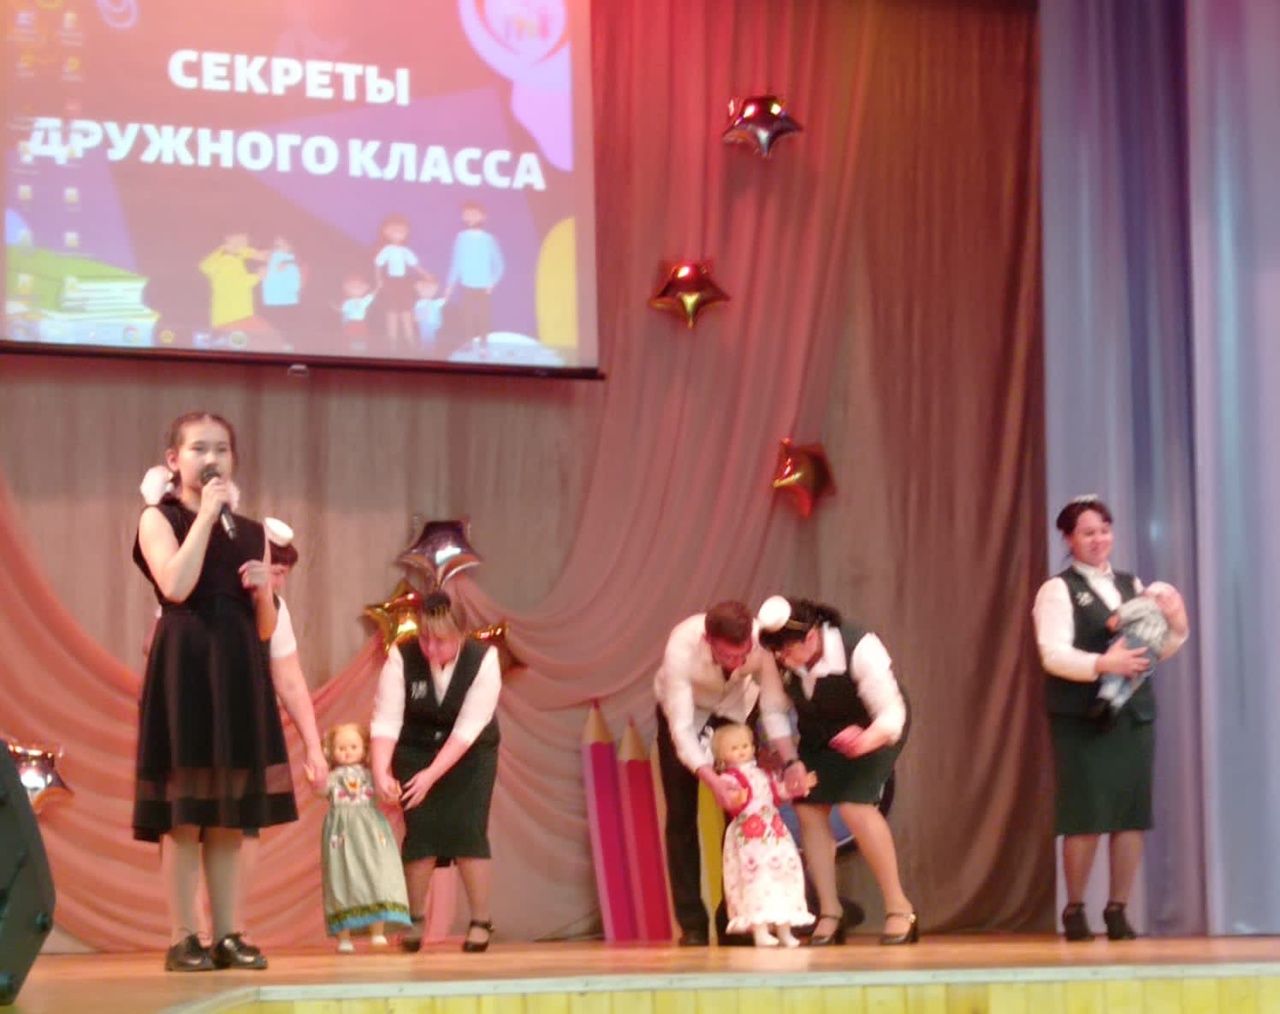 В Тетюшах состоялся зональный этап Республиканского конкурса «Секреты дружного класса»